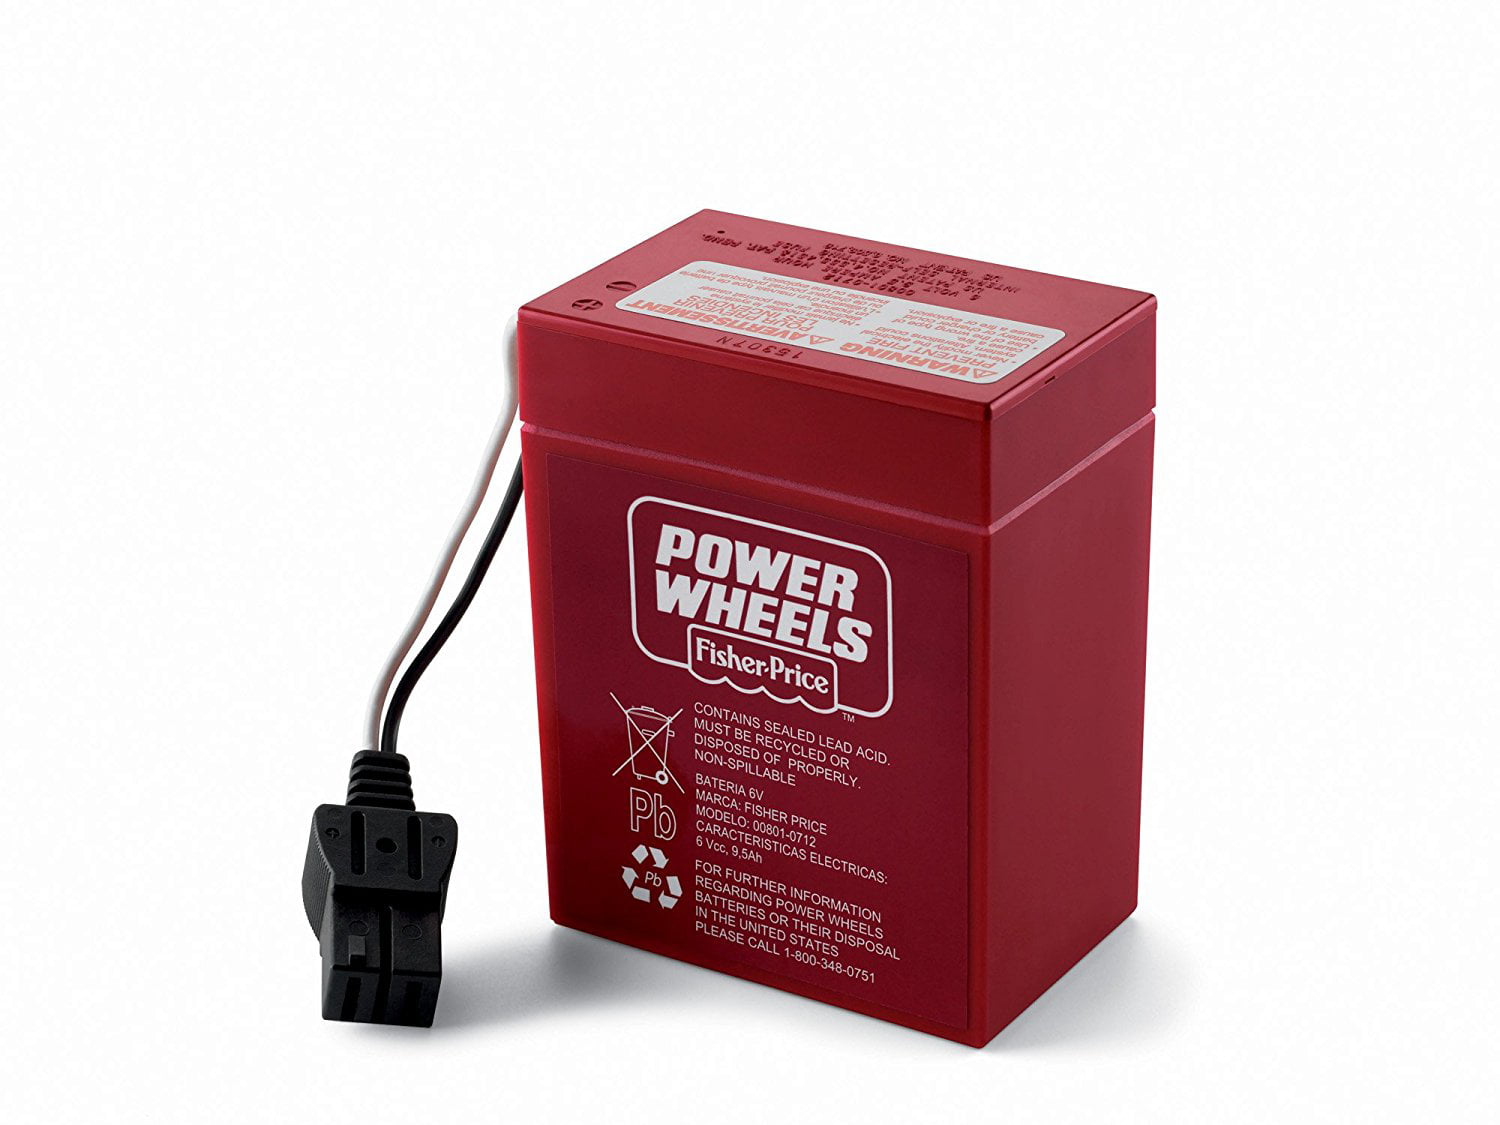 Power Wheels DPK45 Black Corvette Fisher Price Red 6 Volt Battery Genuine 